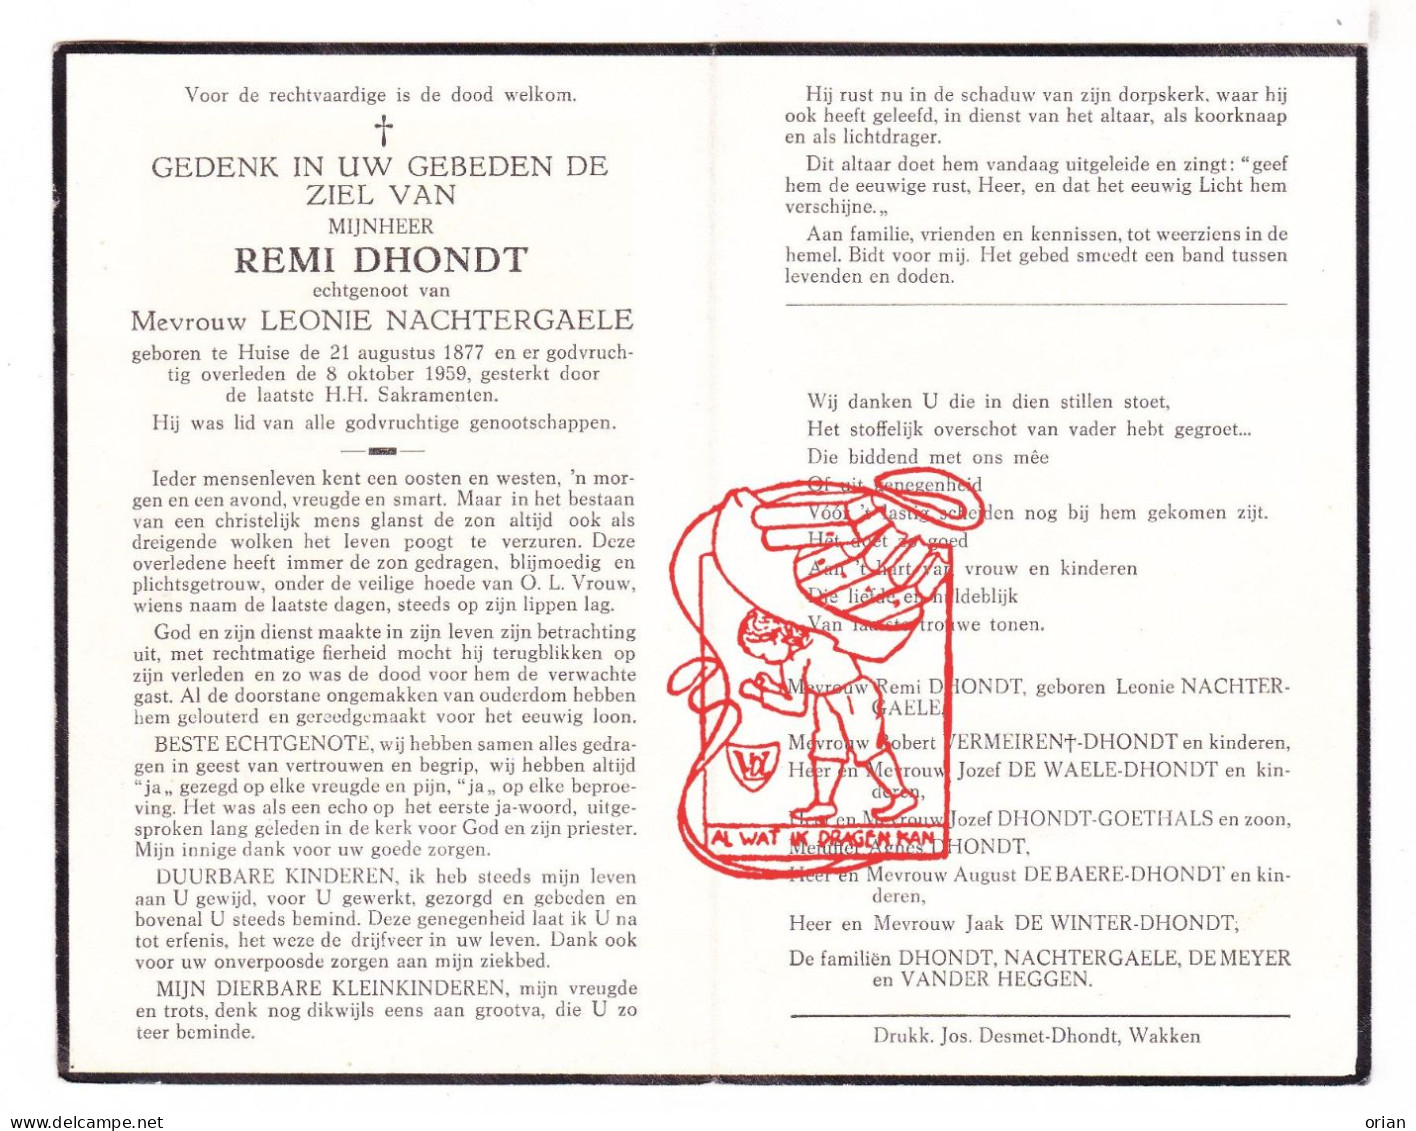 DP Remi Dhondt ° Huise Zingem 1877 † 1959 Nachtergaele Vermeiren De Waele Goethals De Baere Winter Vander Heggen Meyer - Devotieprenten